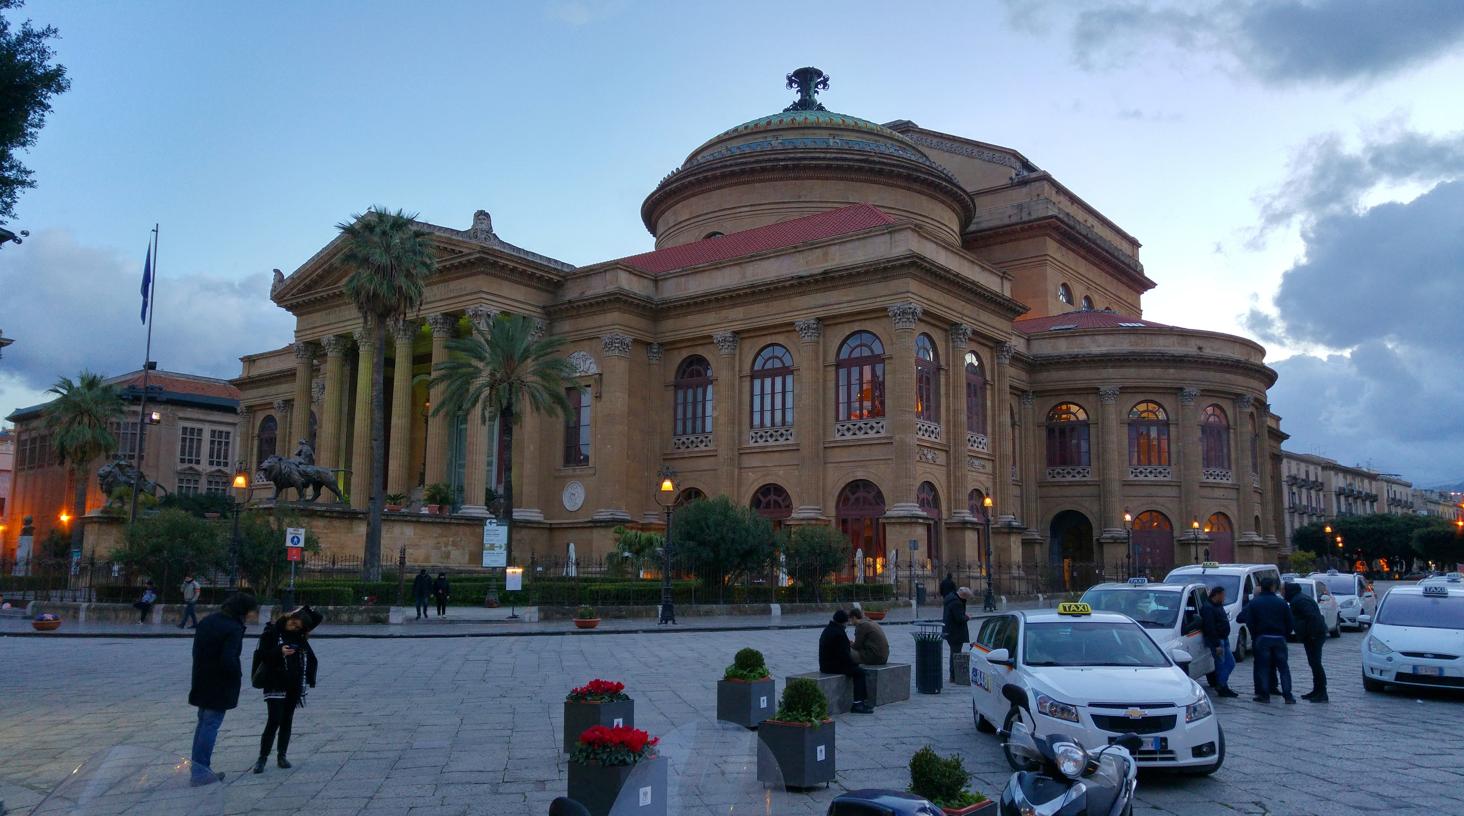 Parada taxis frente Teatro Massimo